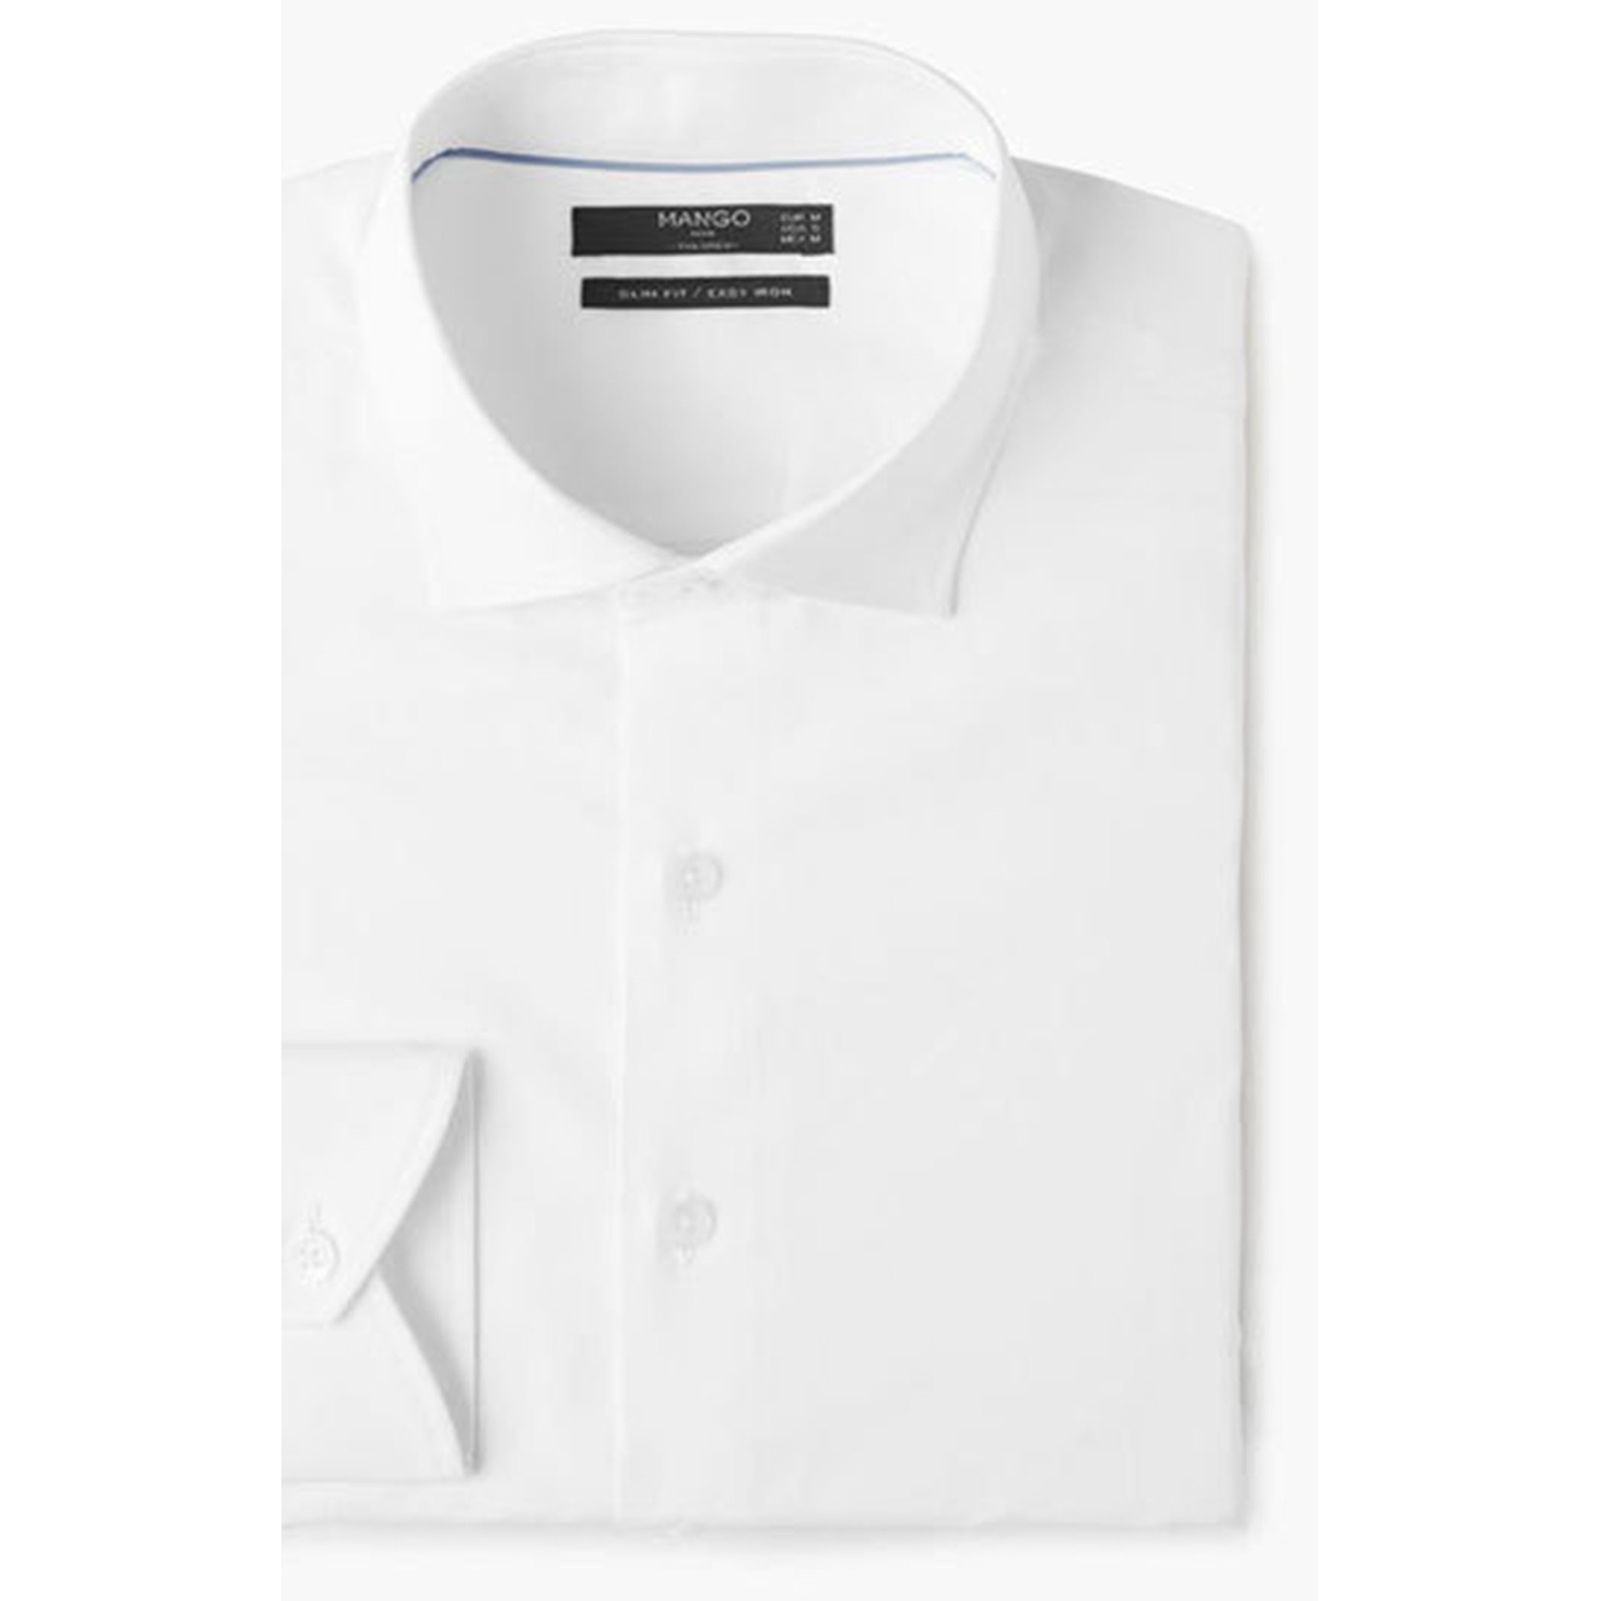 پیراهن رسمی مردانه - مانگو - سفيد - 4